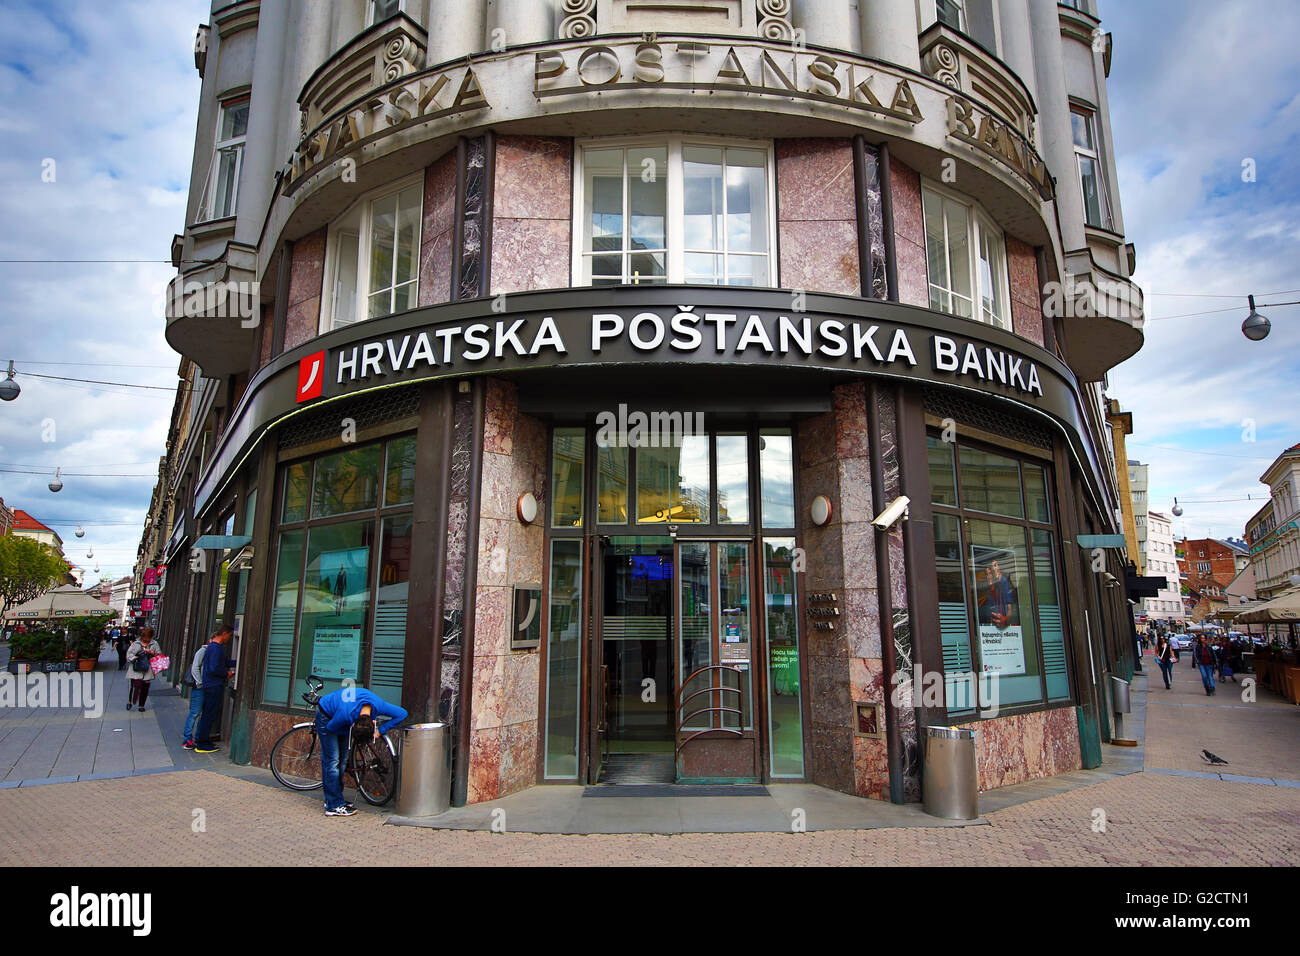 Hrvatska Postanska Banka bank in Zagreb, Croatia Stock Photo